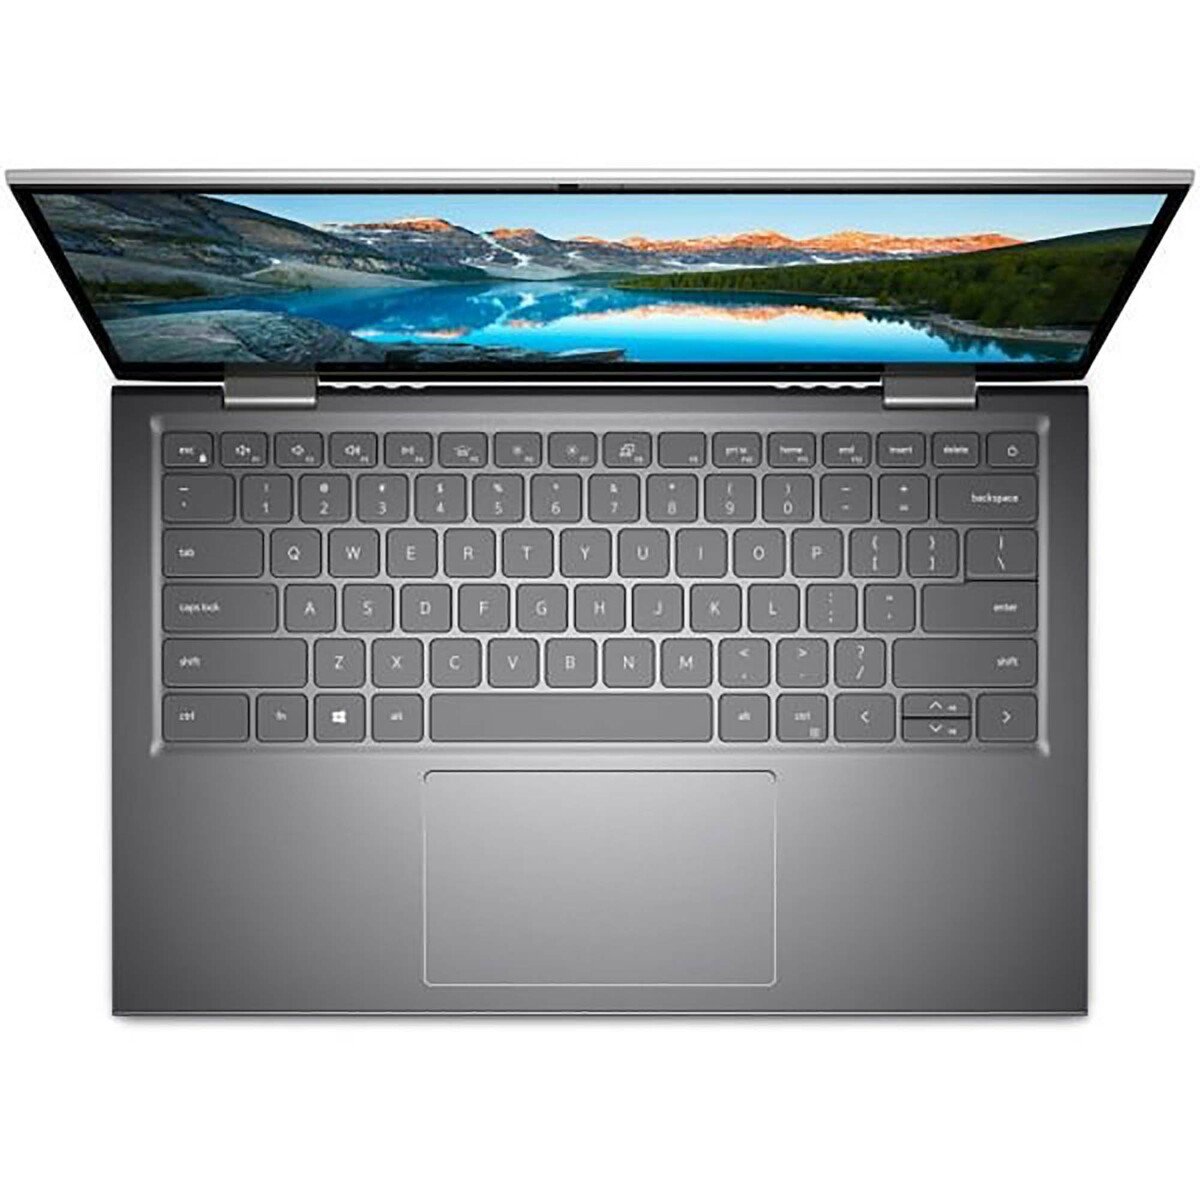 Dell 5410-INS14-5047-SL 2-in-1 Laptop – Core i5 2.4GHz,8GB RAM, 512GB SSD,GeForce(R) MX350 with 2GB, WinDOWS 10, 14inch FHD, Silver, English/Arabic Keyboard